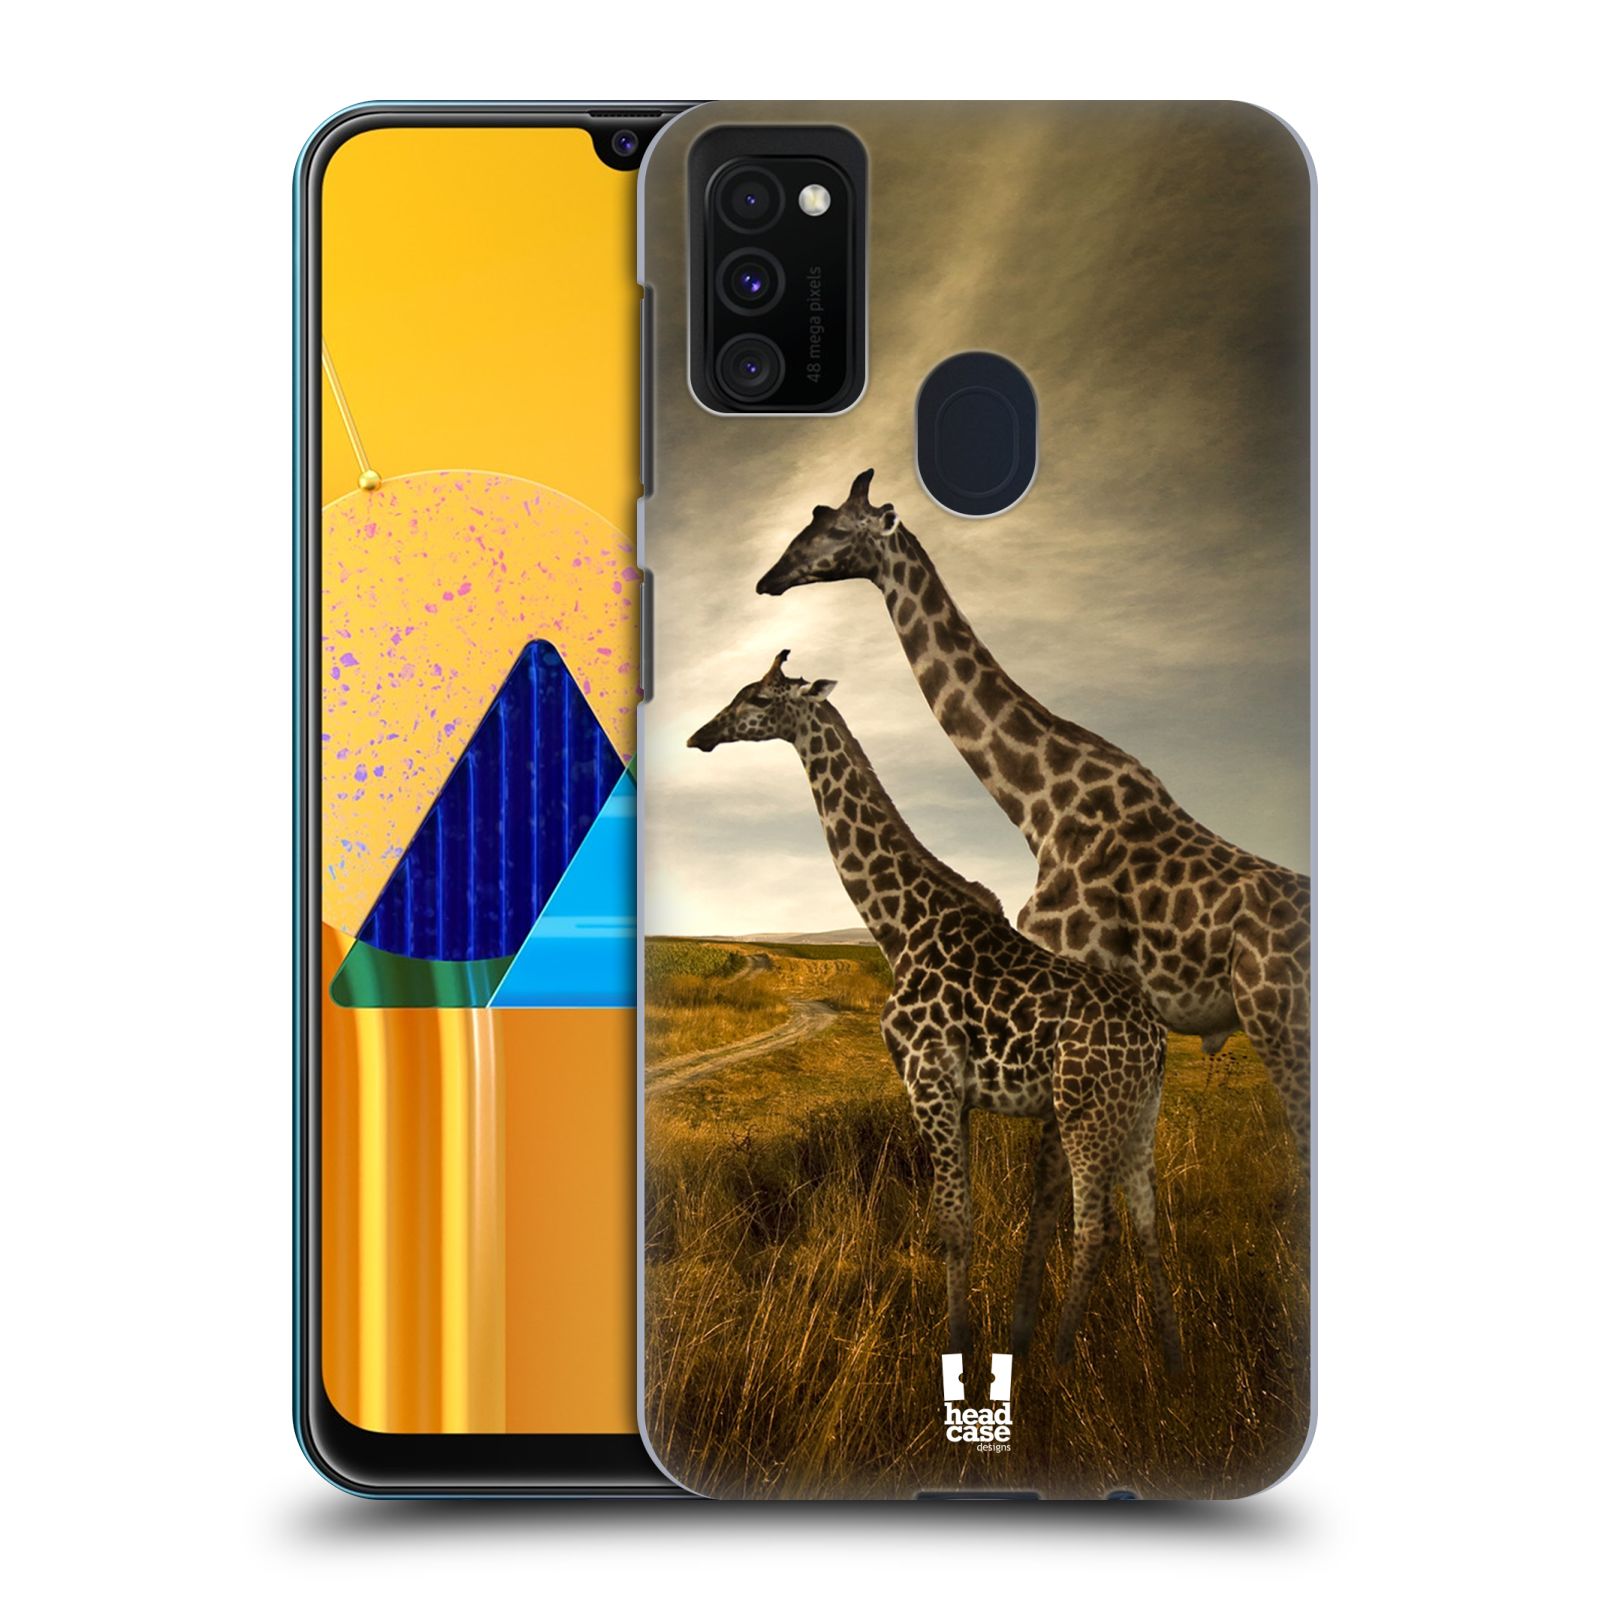 Zadní obal pro mobil Samsung Galaxy M21 - HEAD CASE - Svět zvířat žirafy